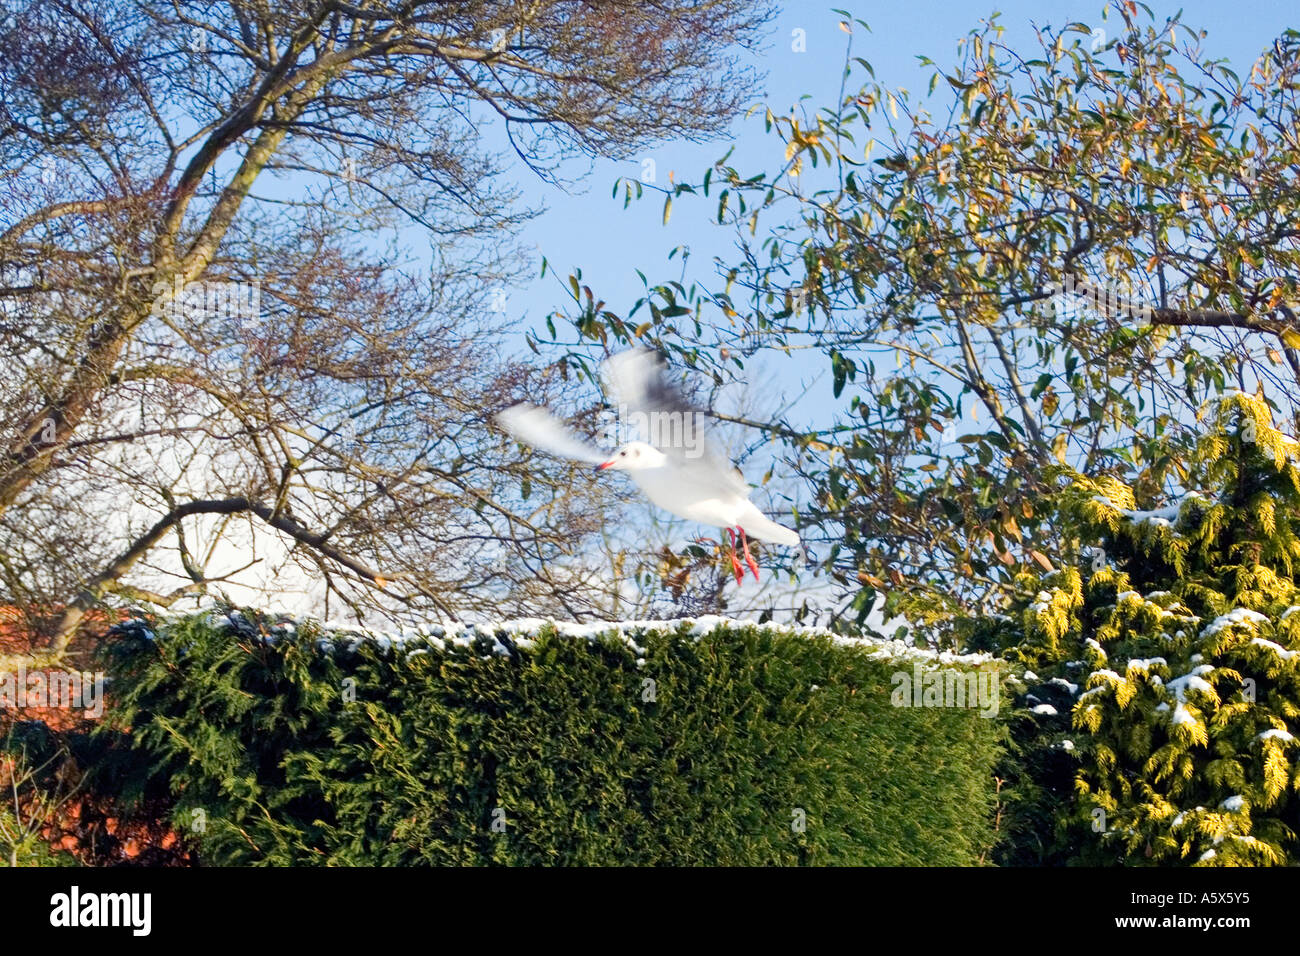 Mouette en vol dans un jardin anglais Banque D'Images